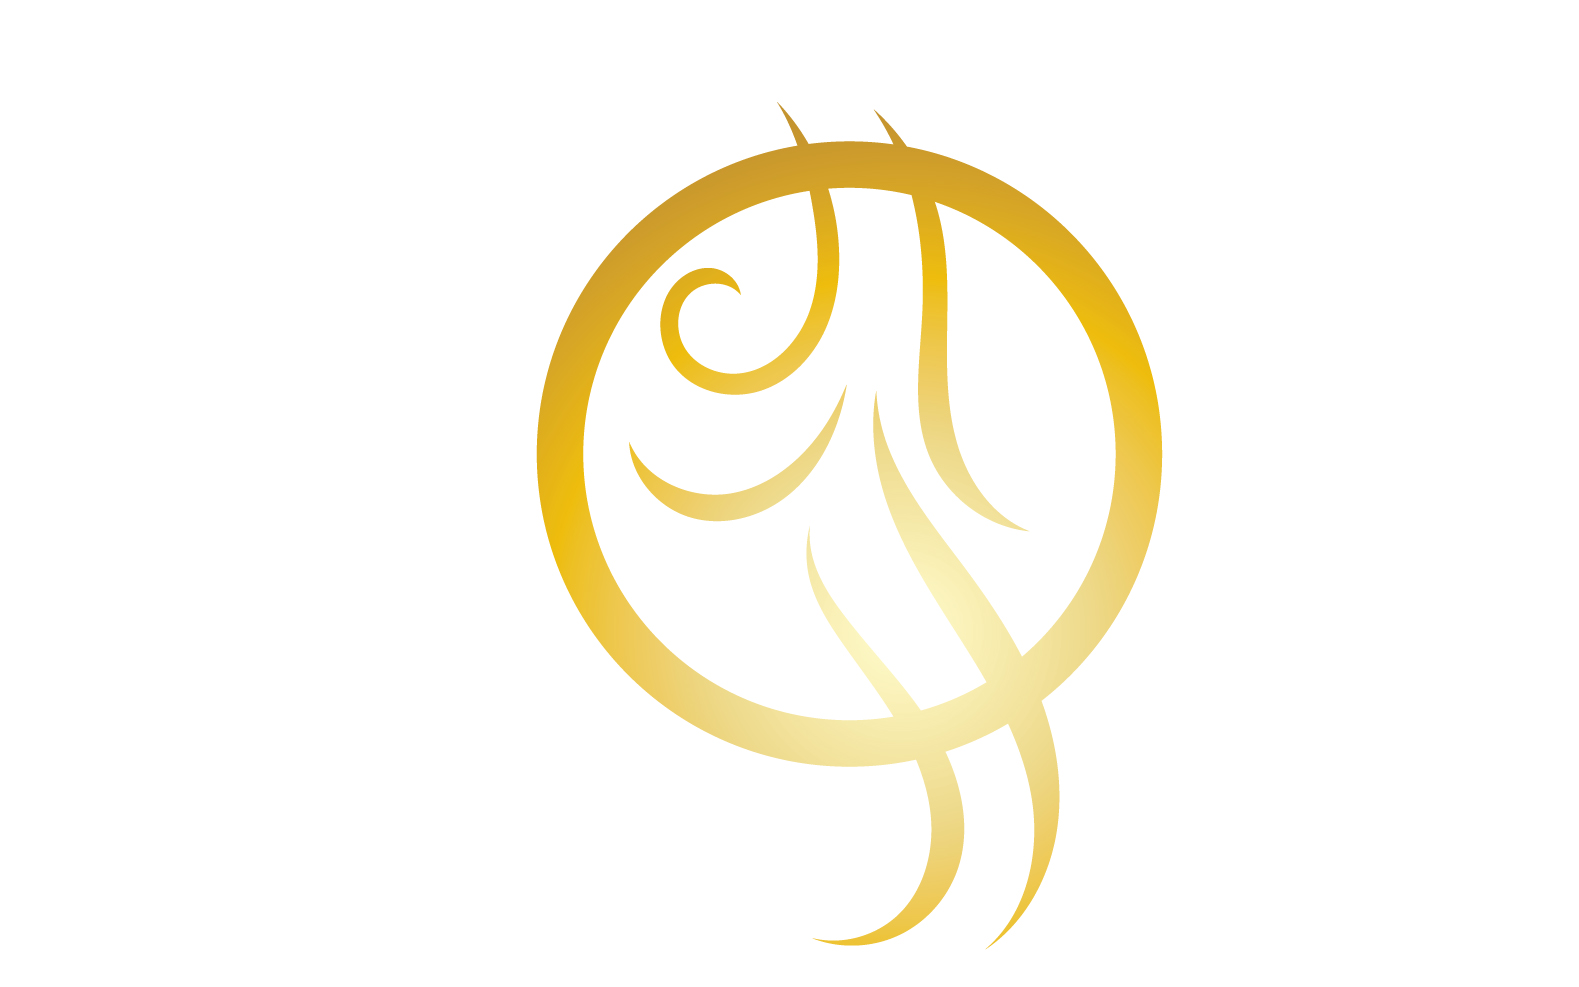 Hair line wave design  logo and symbol vector v29